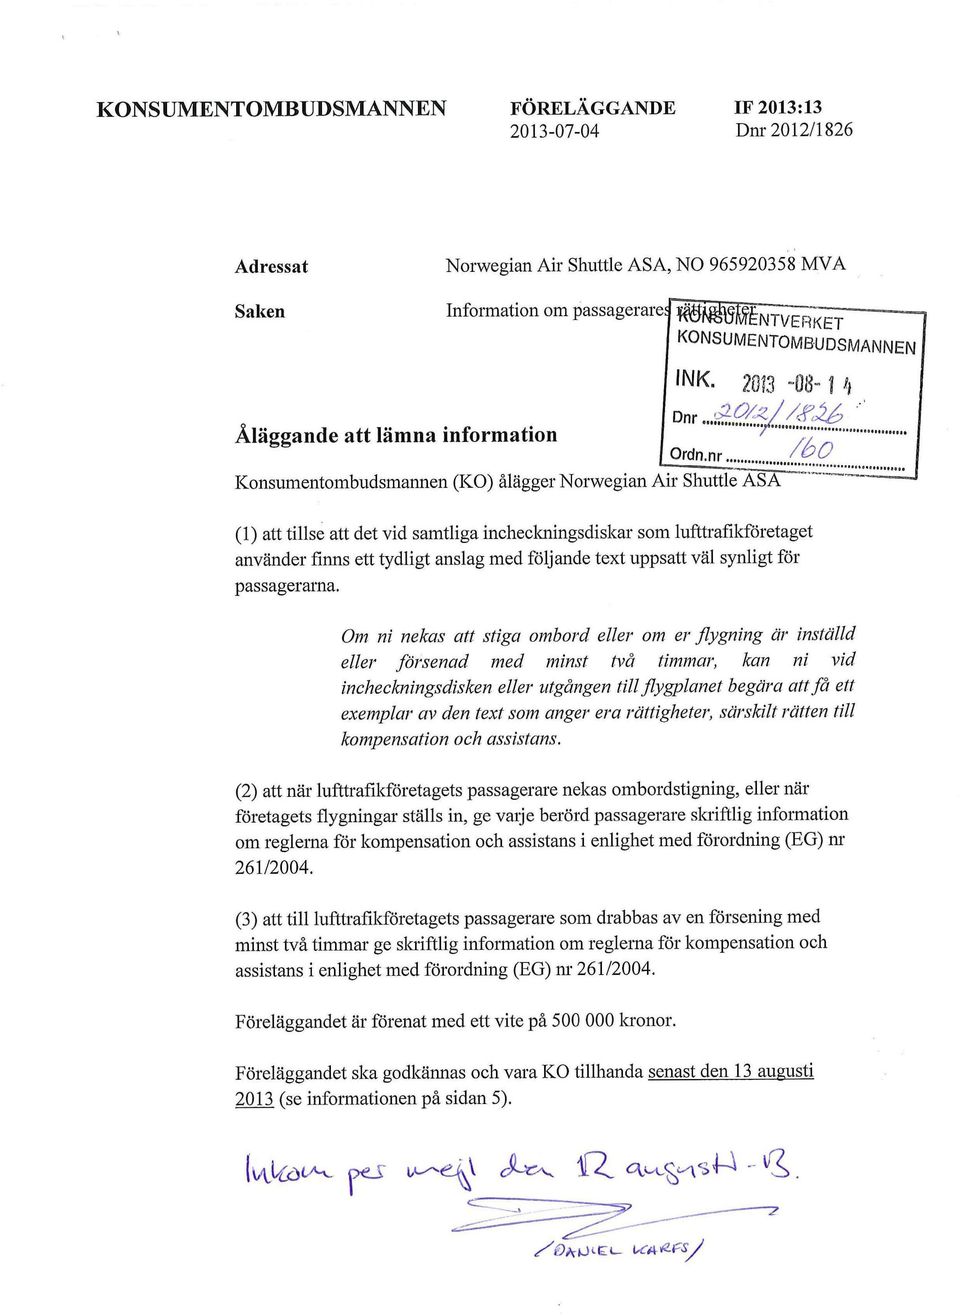 .... Konsumentombudsmannen (KO) ålägger Norwegian Air Shuttle ASA (1) att tillse att det vid samtliga inchecloingsdiskar som lufttrafikföretaget använder finns ett tydligt anslag med följande text